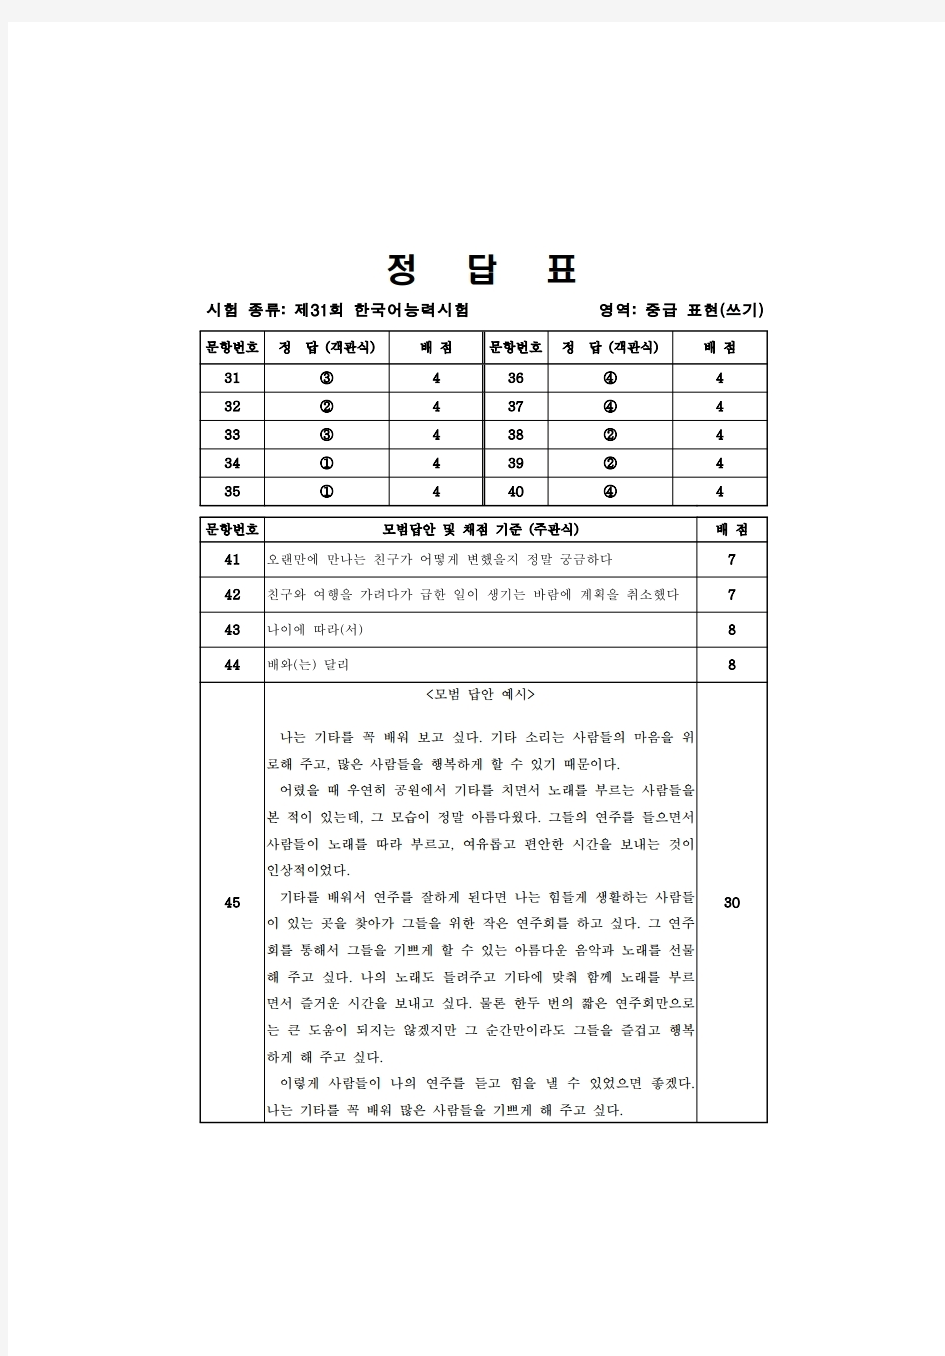 韩国语能力考试(TOPIK)真题资料【31】TOPIK31届写作答案